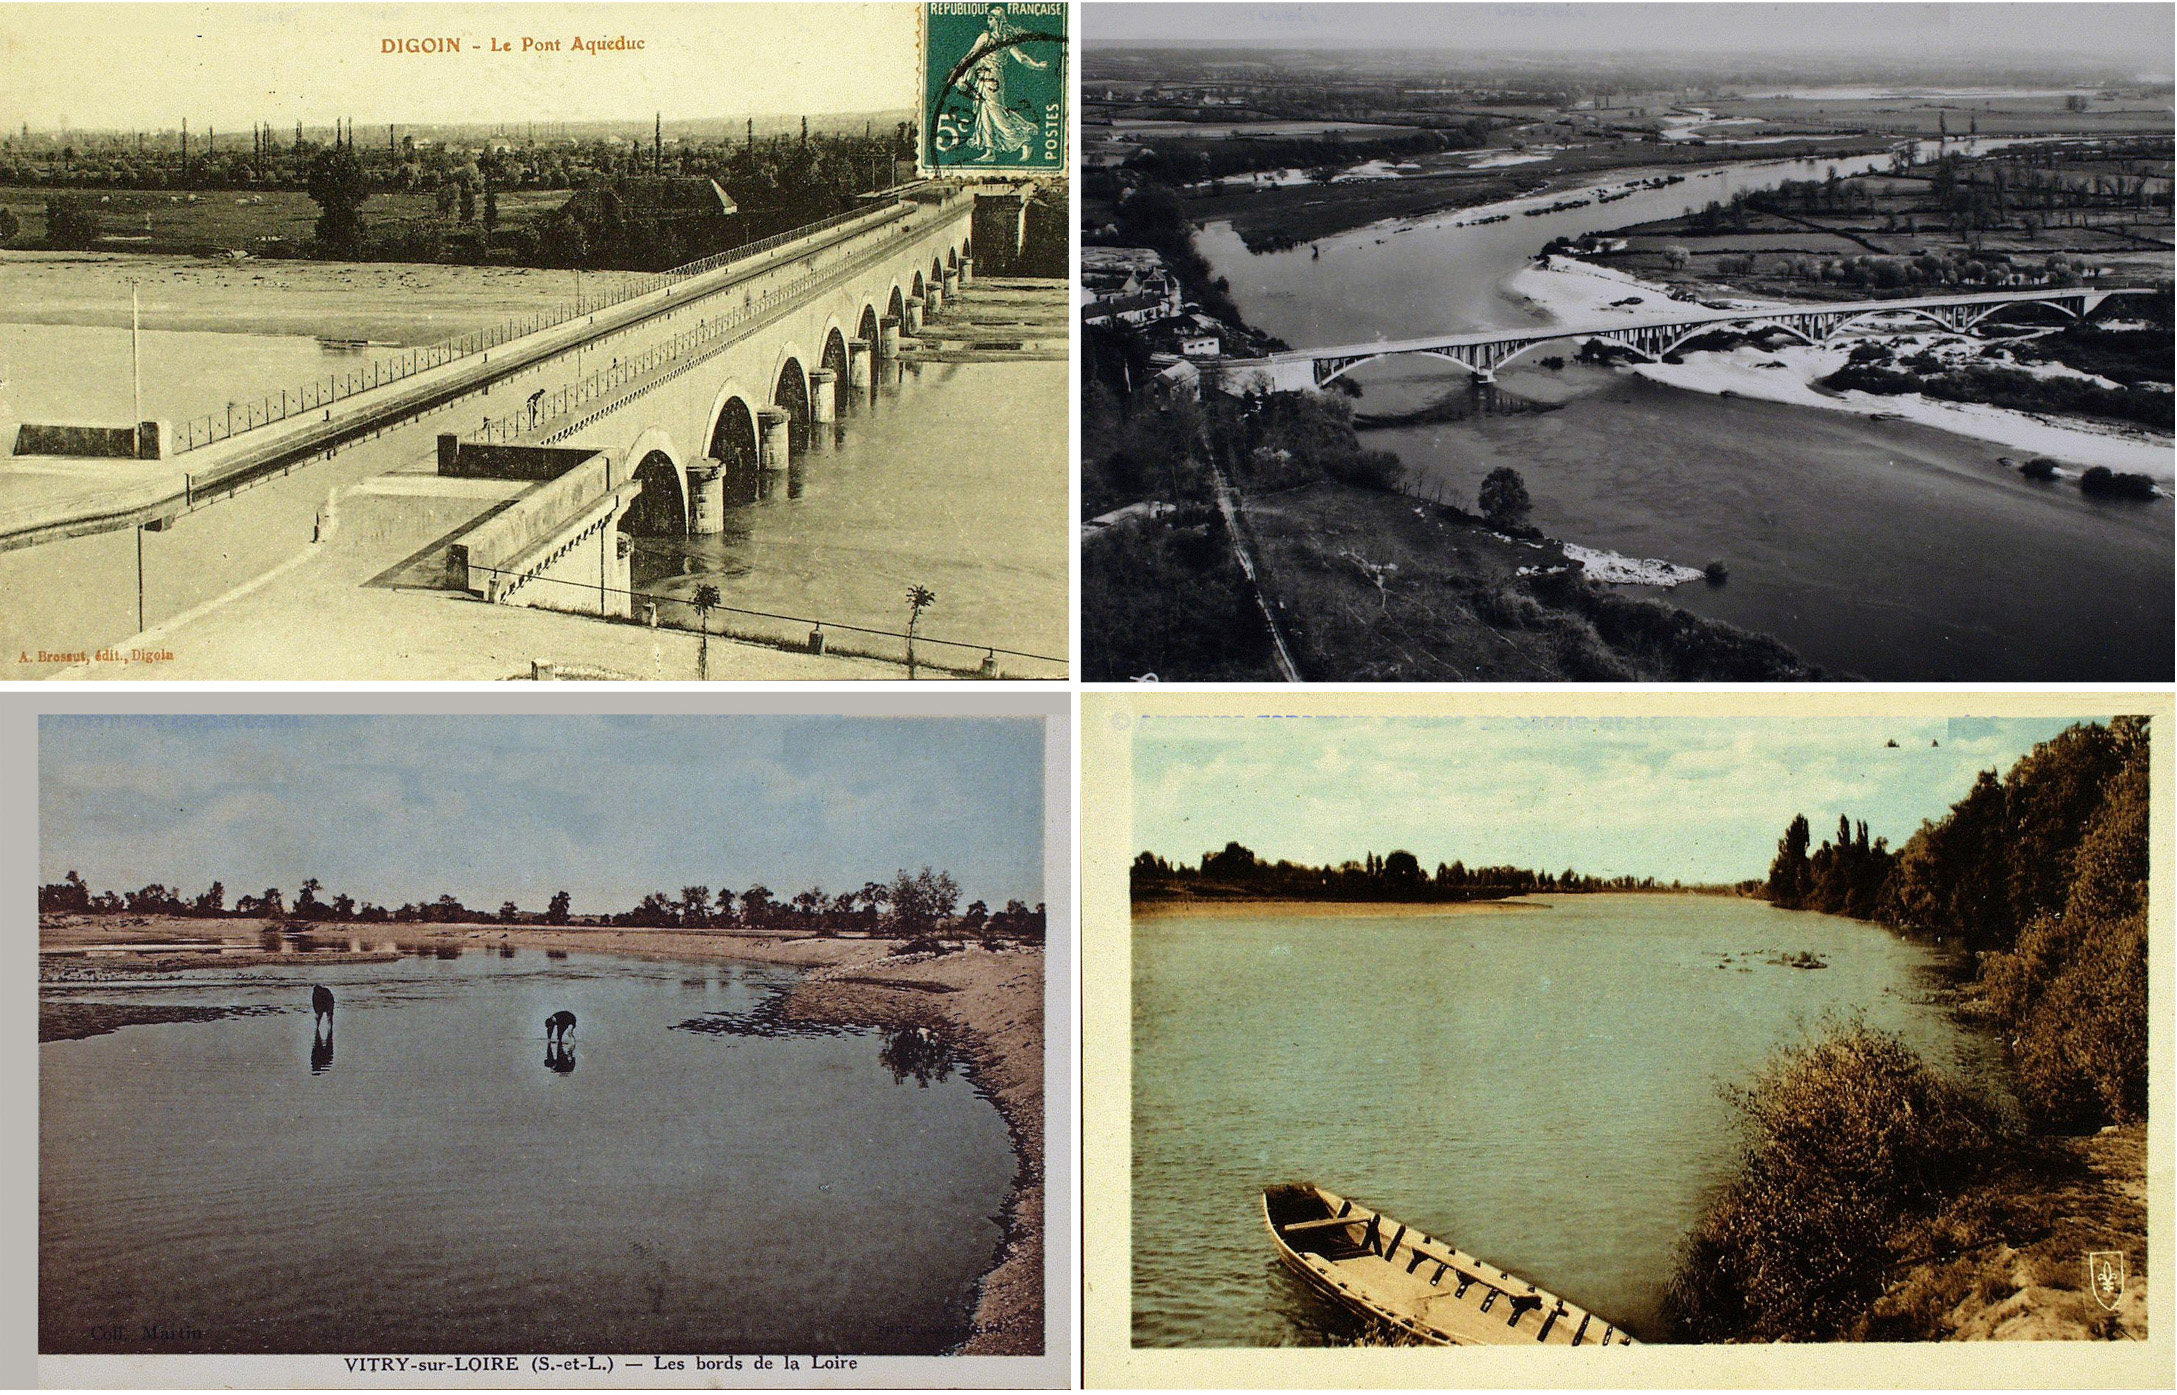 De gauche à droite, de bas en haut : Digoin, le pont Aqueduc, sd ; Bourbon-Lancy, après 1950 ; Vitry-sur-Loire, les bords de la Loire, 1903 ; Saint-Aubin   en grand format (nouvelle fenêtre)